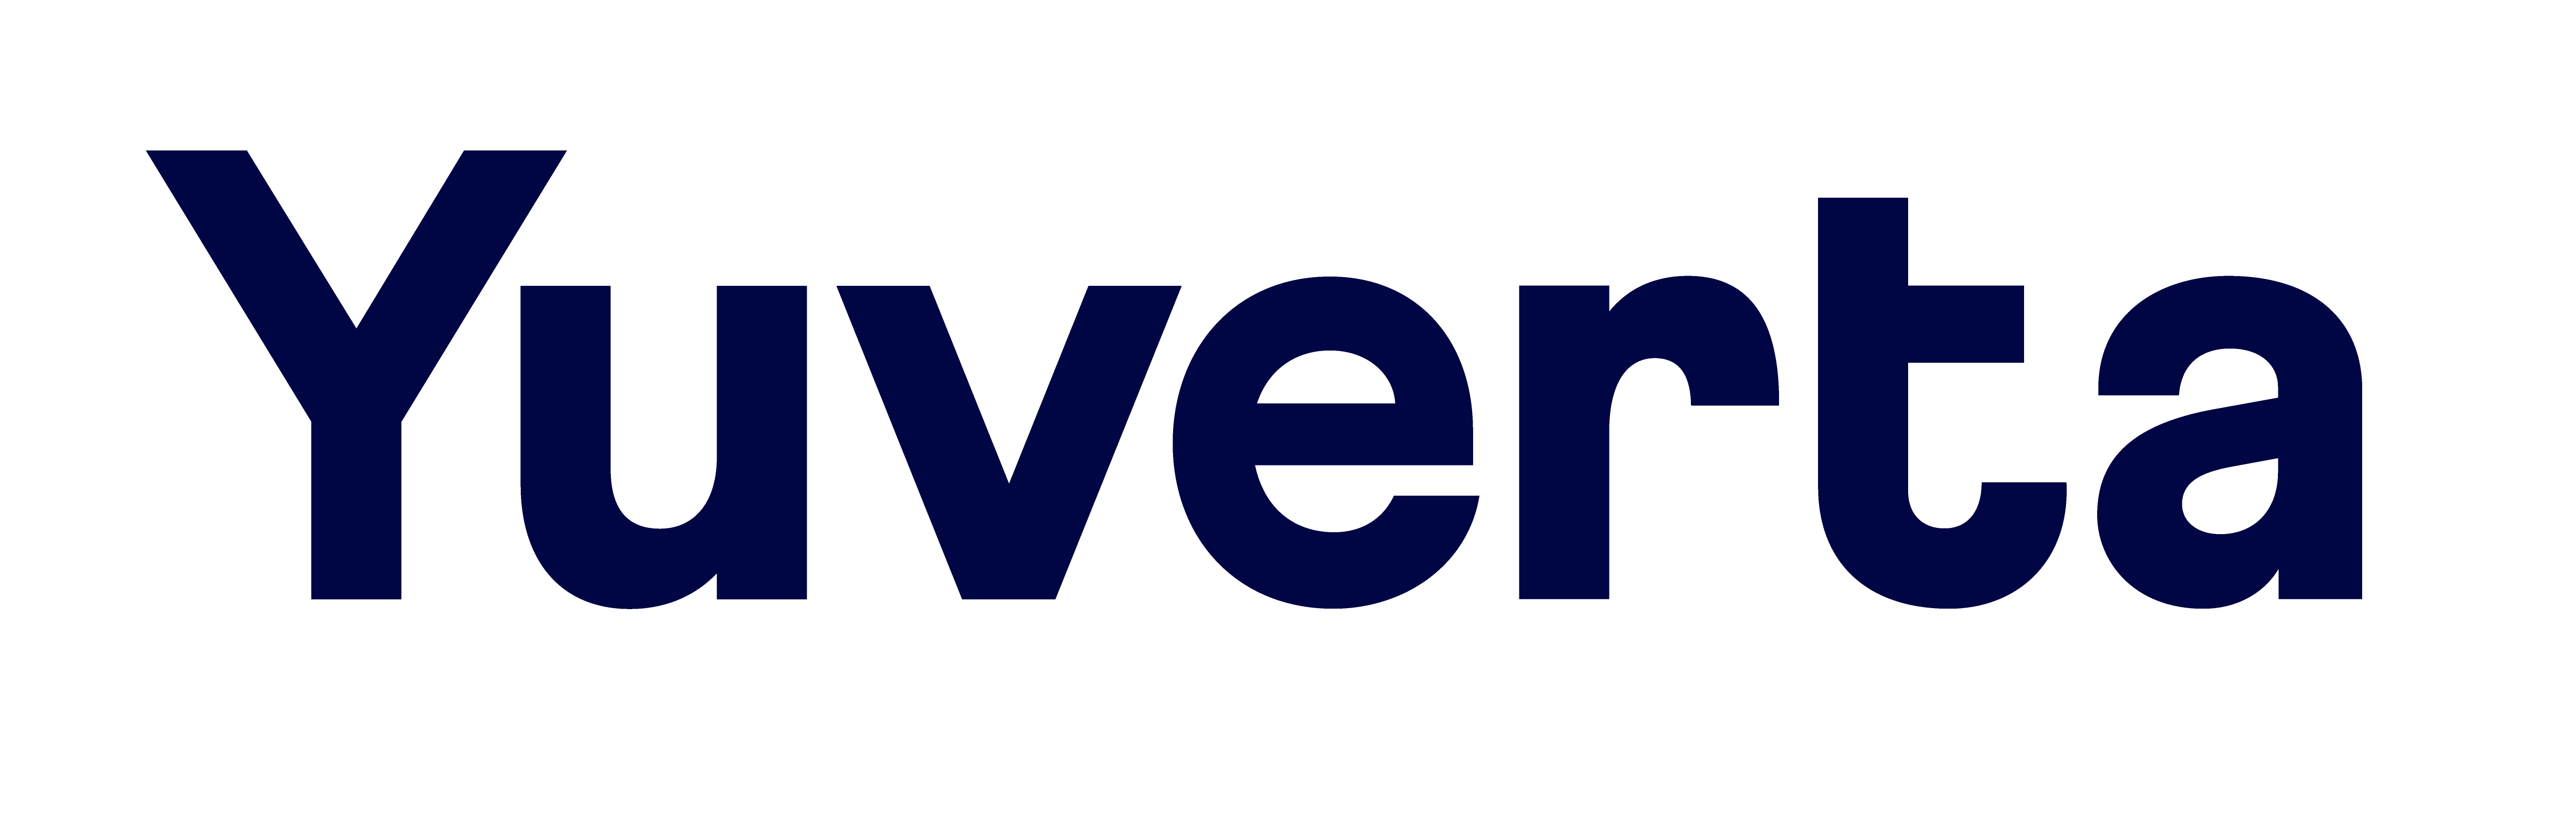 Yuverta-Logo-Donker-Blauw-RGB